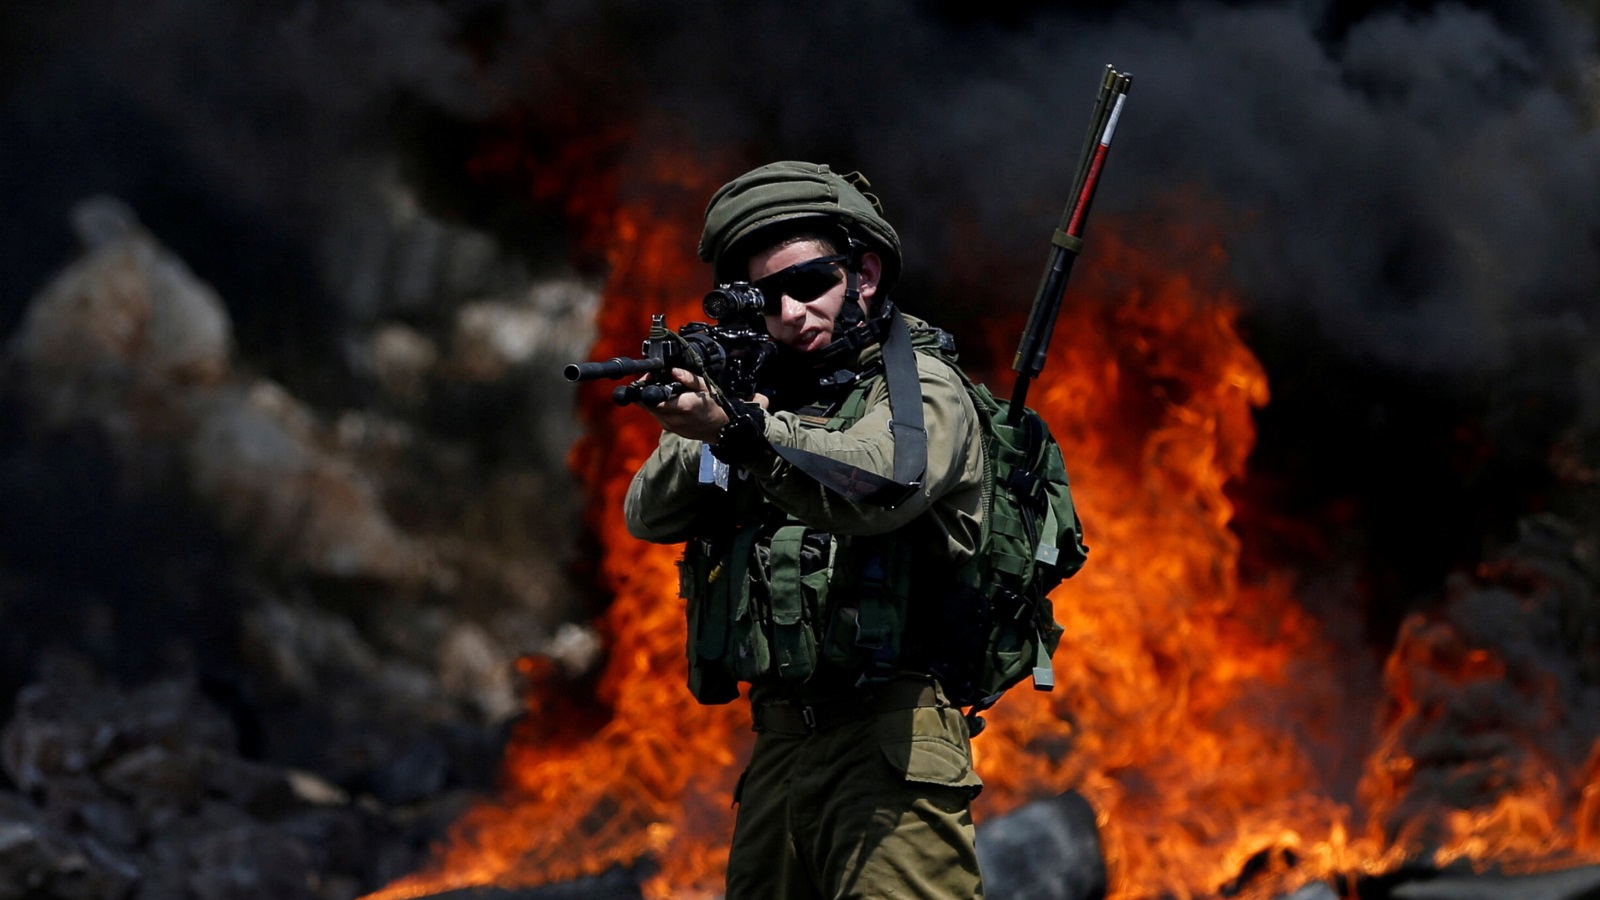 لا يحتاجُ الجنديّ الإسرائيليّ أن يكلّف نفسه عناء الدخول إلى المناطق الفلسطينيّة، فهو يمارسُ سلطته عبر المعابر الإسرائيليّة المفروضة على الضفّة الغربيّة وقطاع غزة، فالسيادة المطلقة هي للجانب الإسرائيليّ